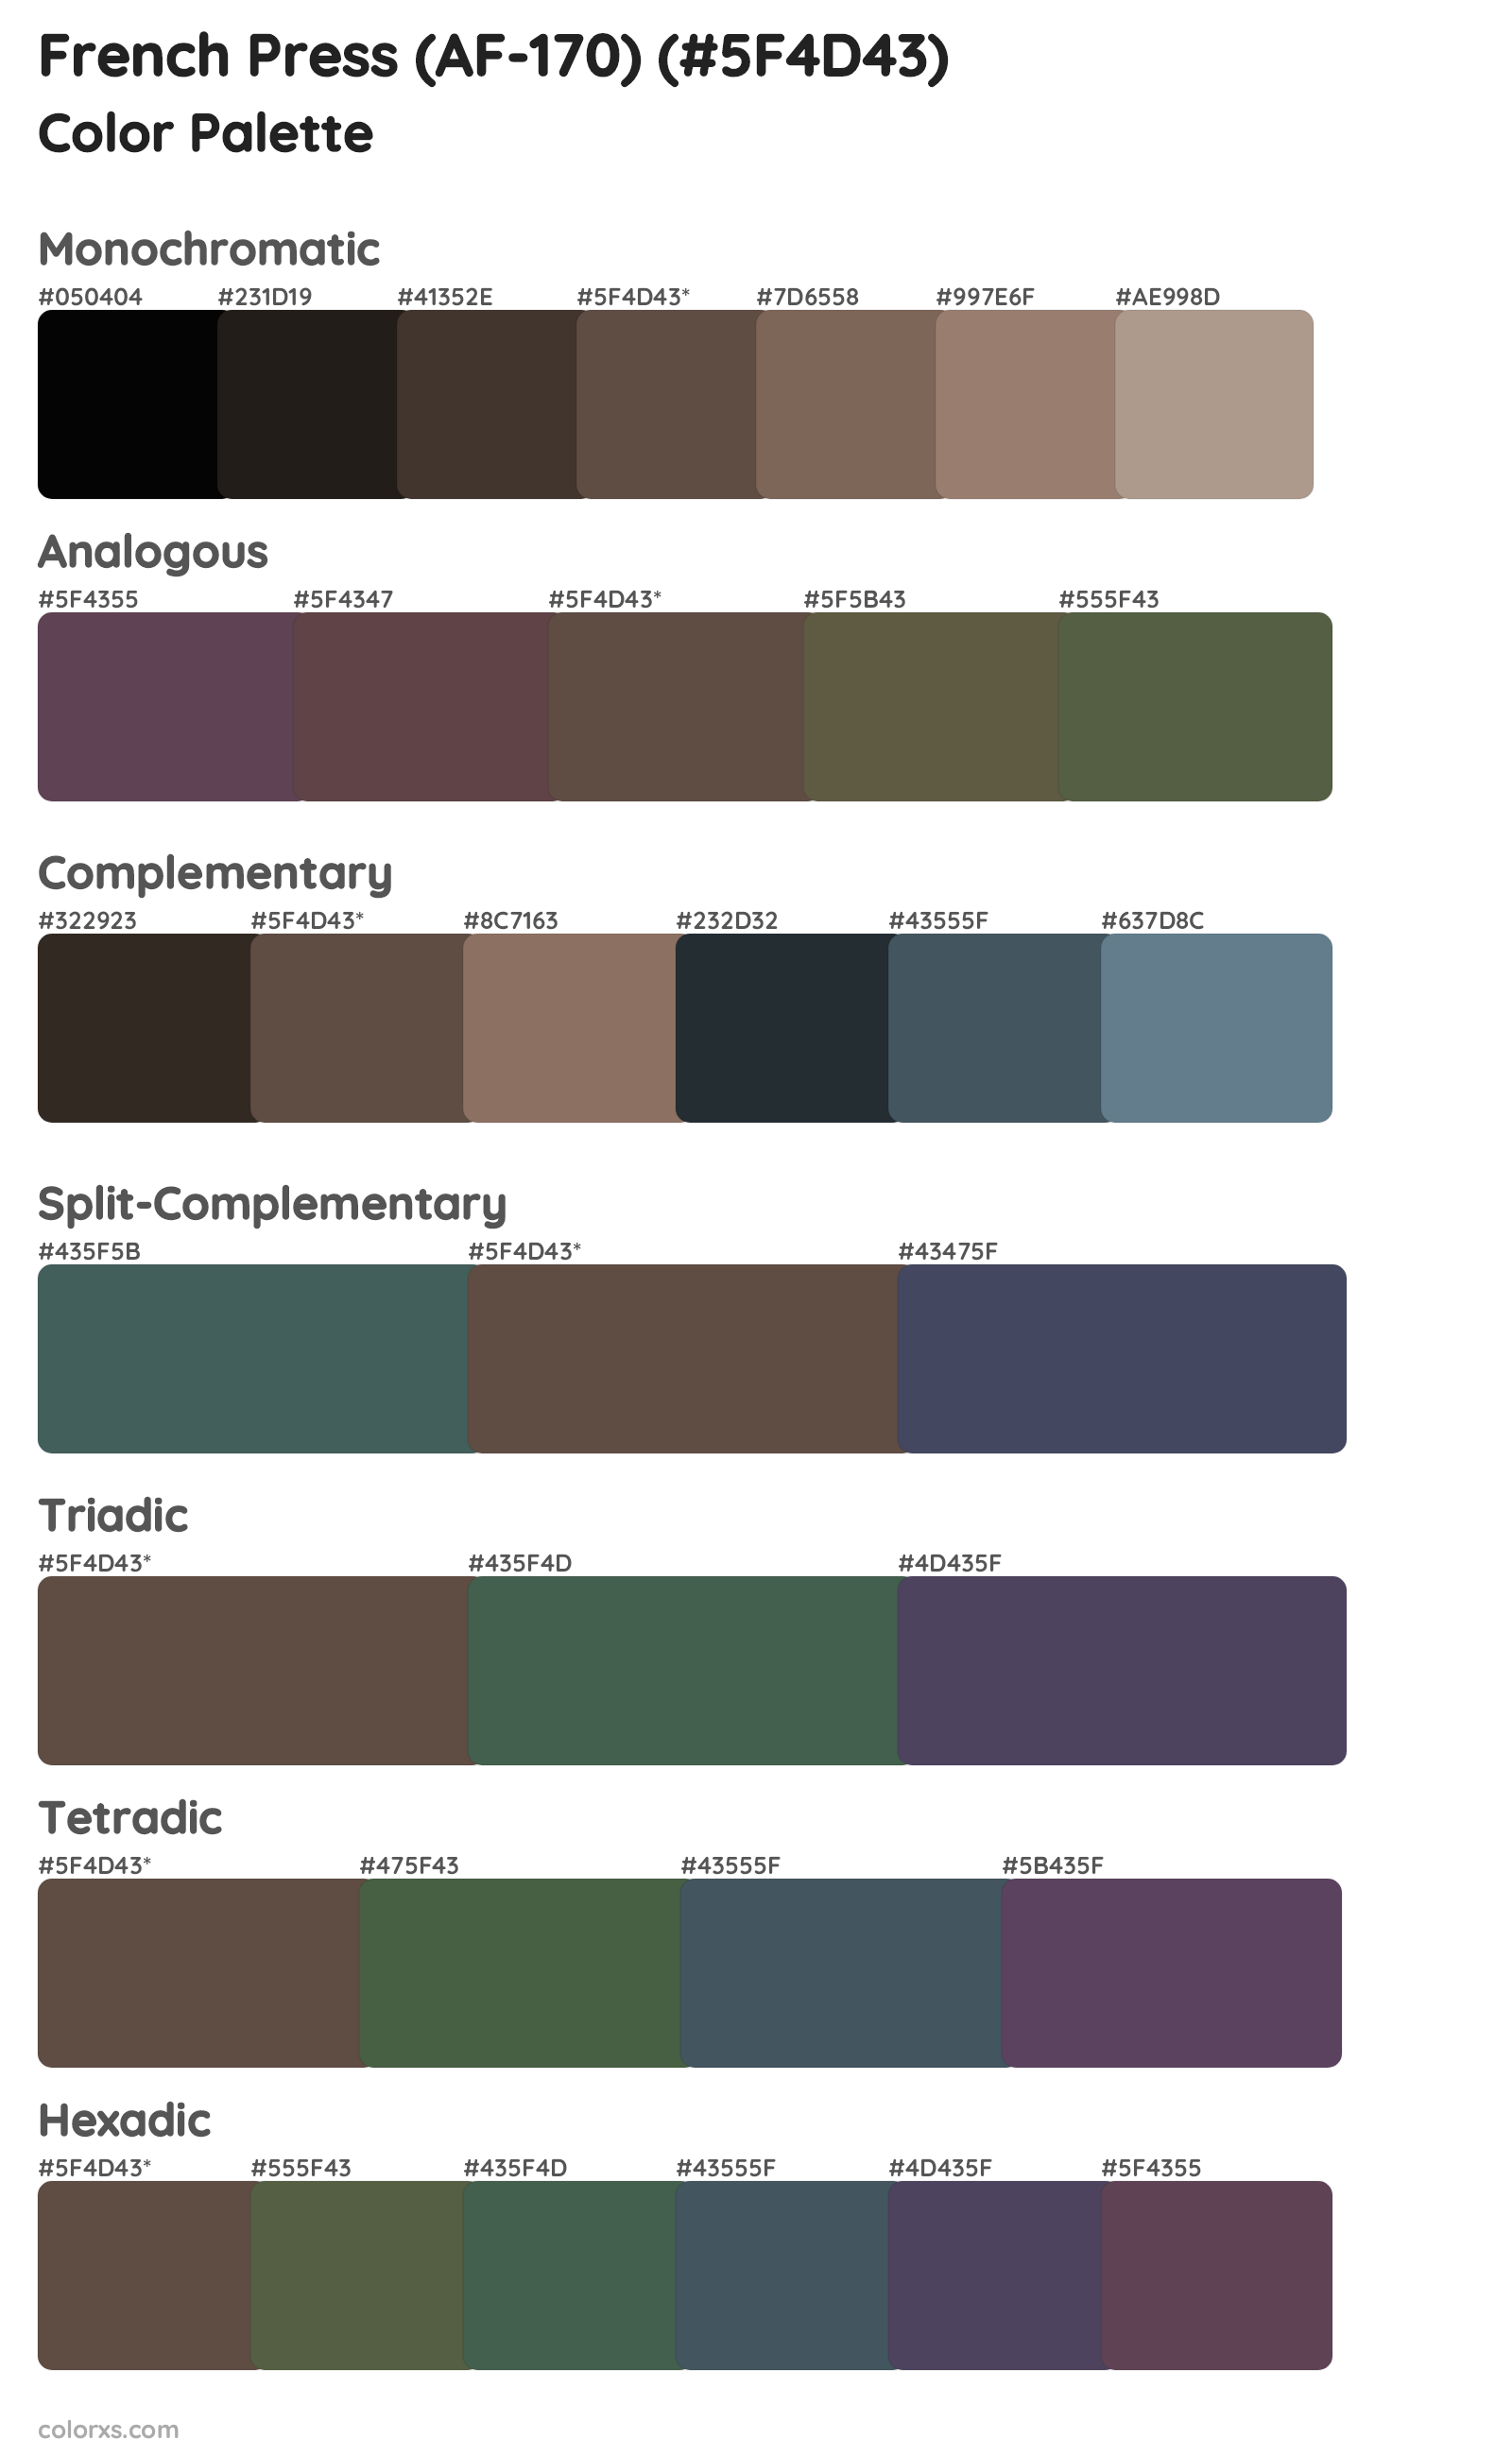 French Press (AF-170) Color Scheme Palettes